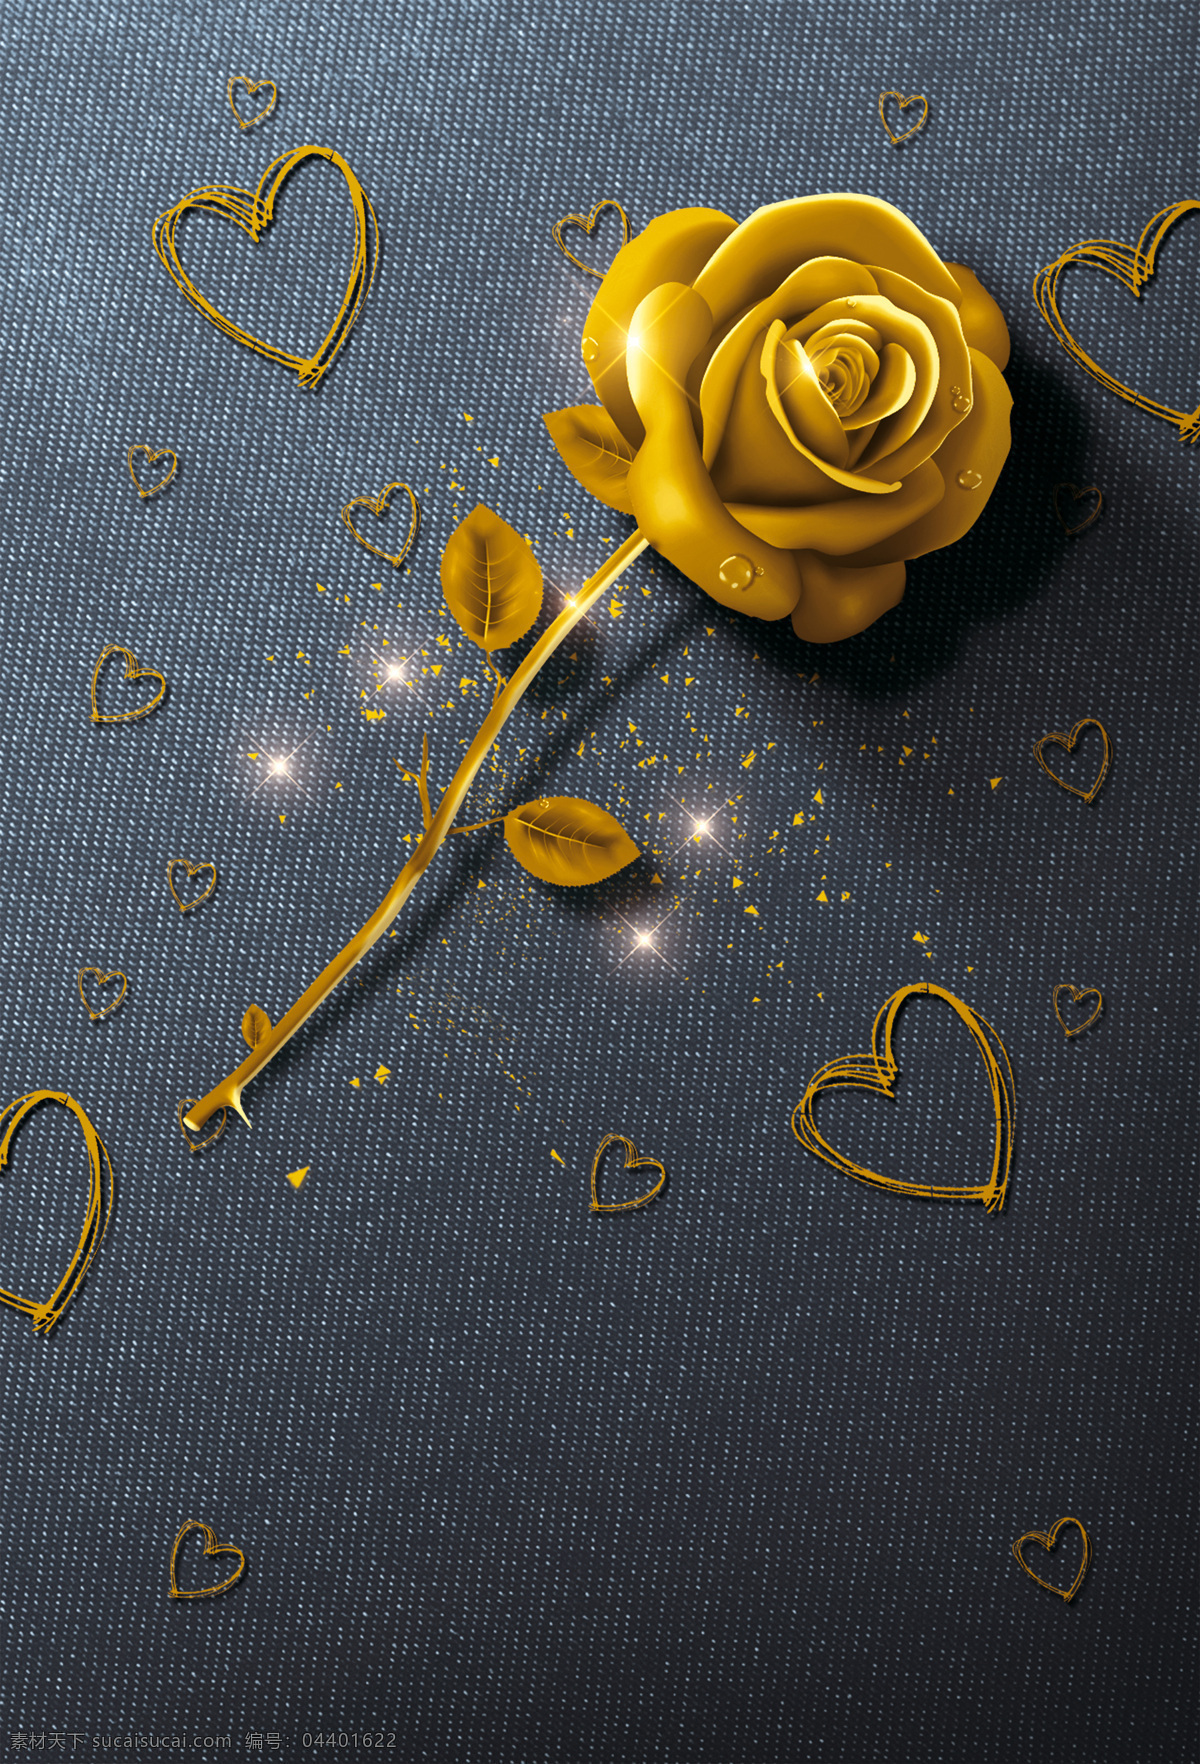 浪漫 金色 玫瑰 背景 唯美 爱情 心形 金色玫瑰 海报 广告